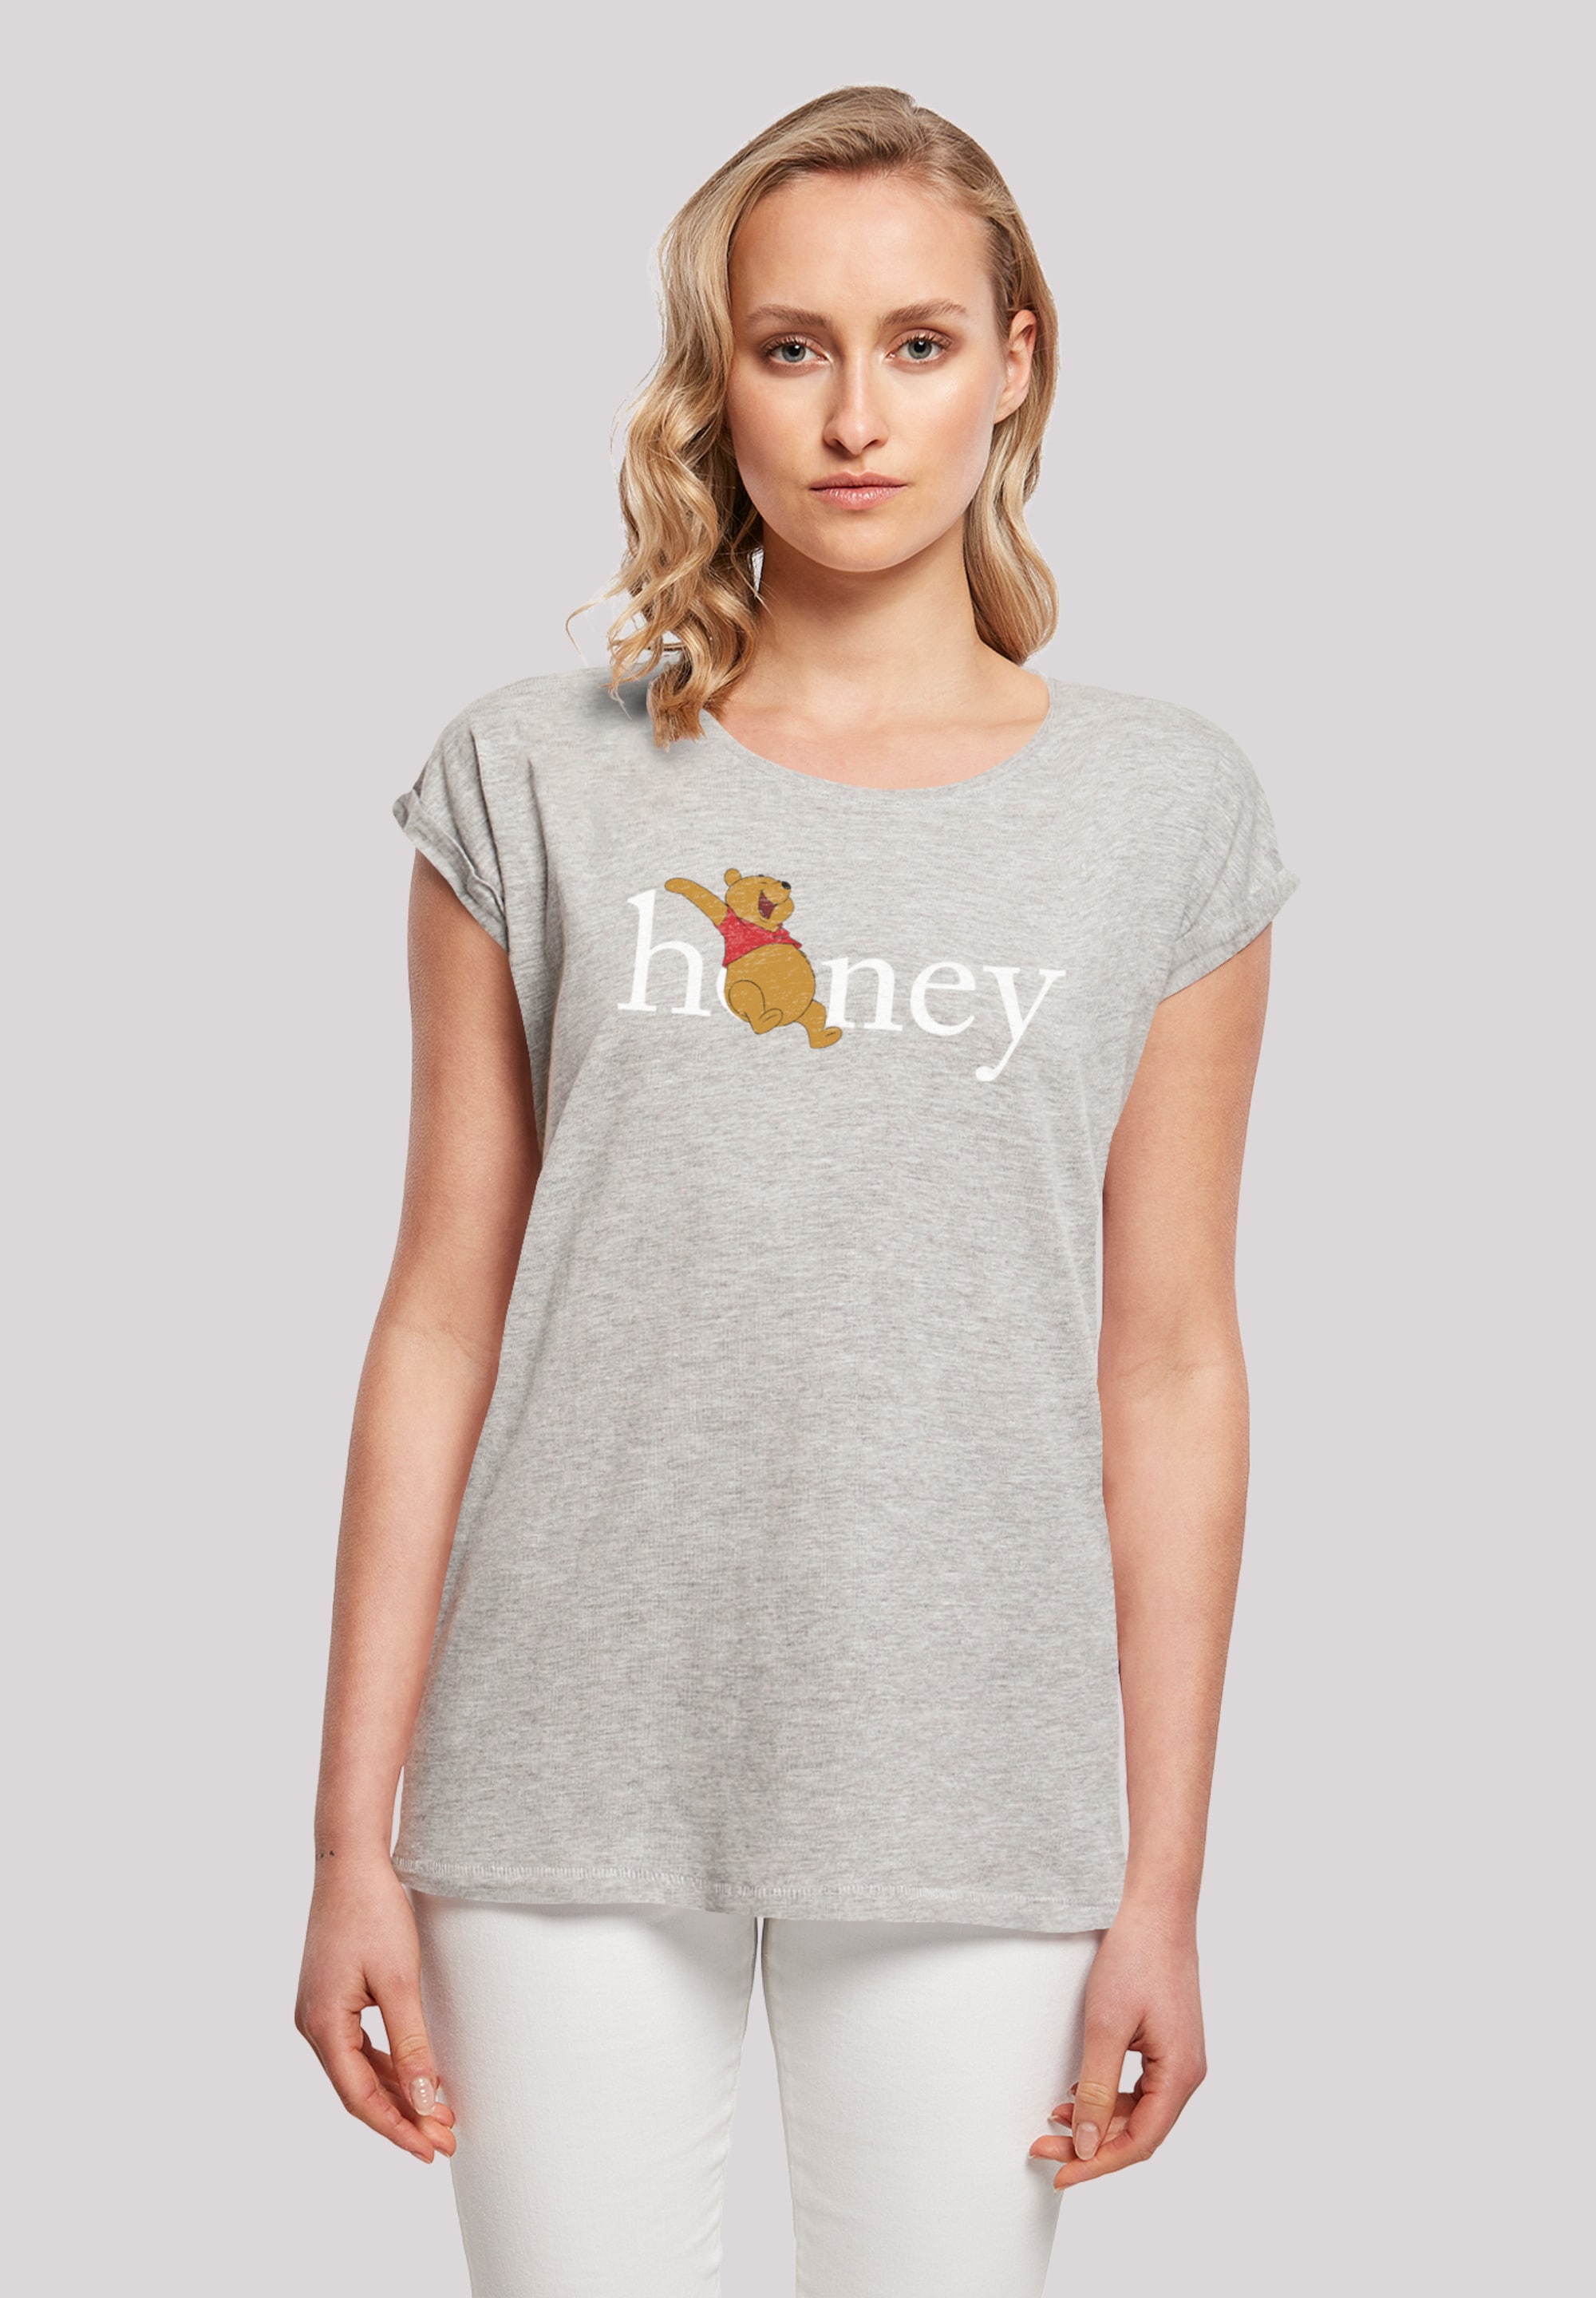 F4NT4STIC T-Shirt Honig«, Winnie Der Puuh Bär bestellen »Disney Print